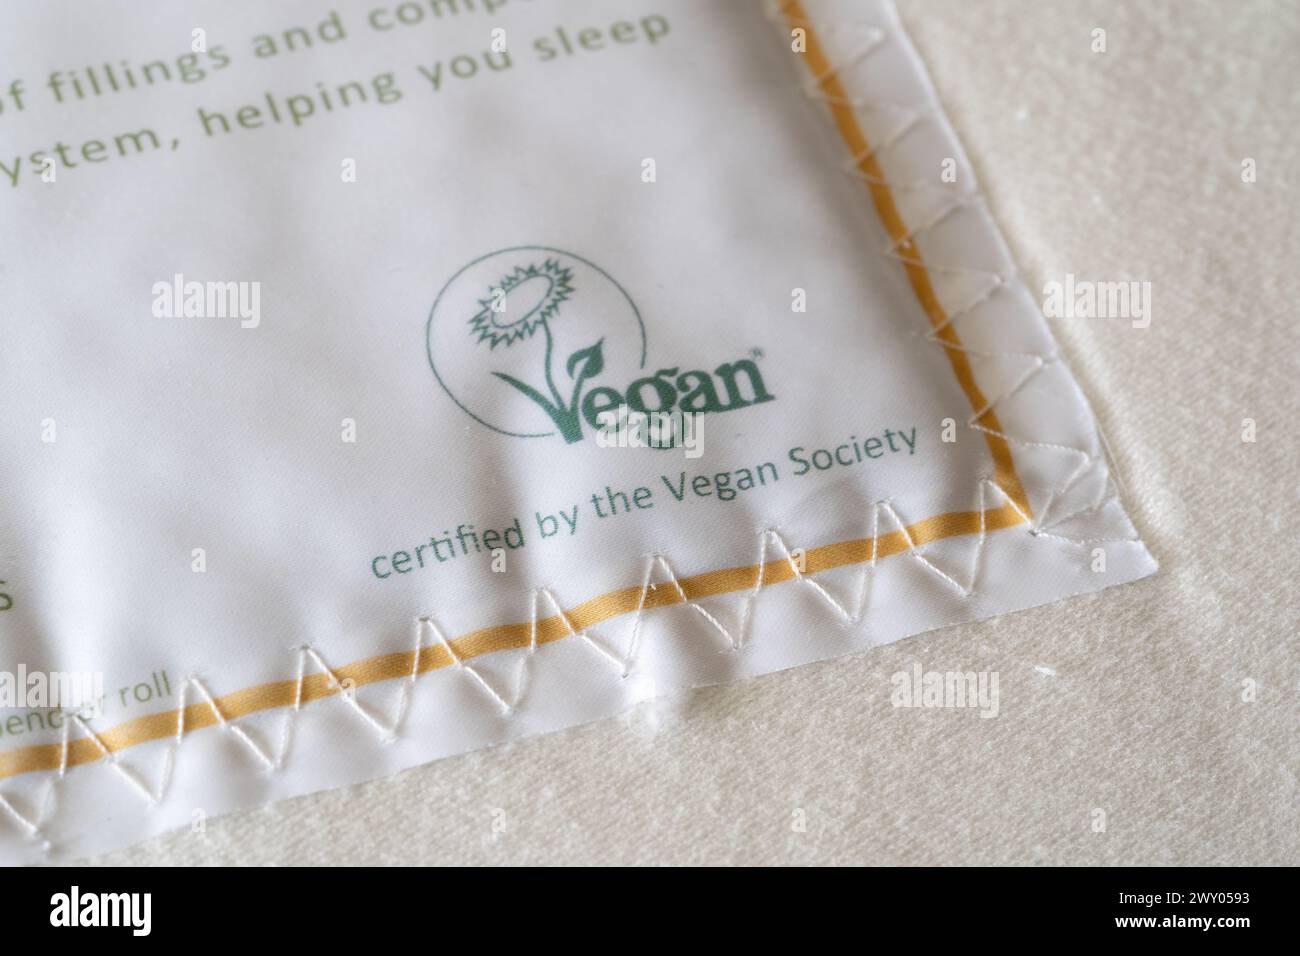 Obtenez le matelas à ressorts de poche laid Beds avec une étiquette certifiant que vegan par la UK Vegan Society. Concept : véganisme, produits végétaliens, produit végétalien Banque D'Images